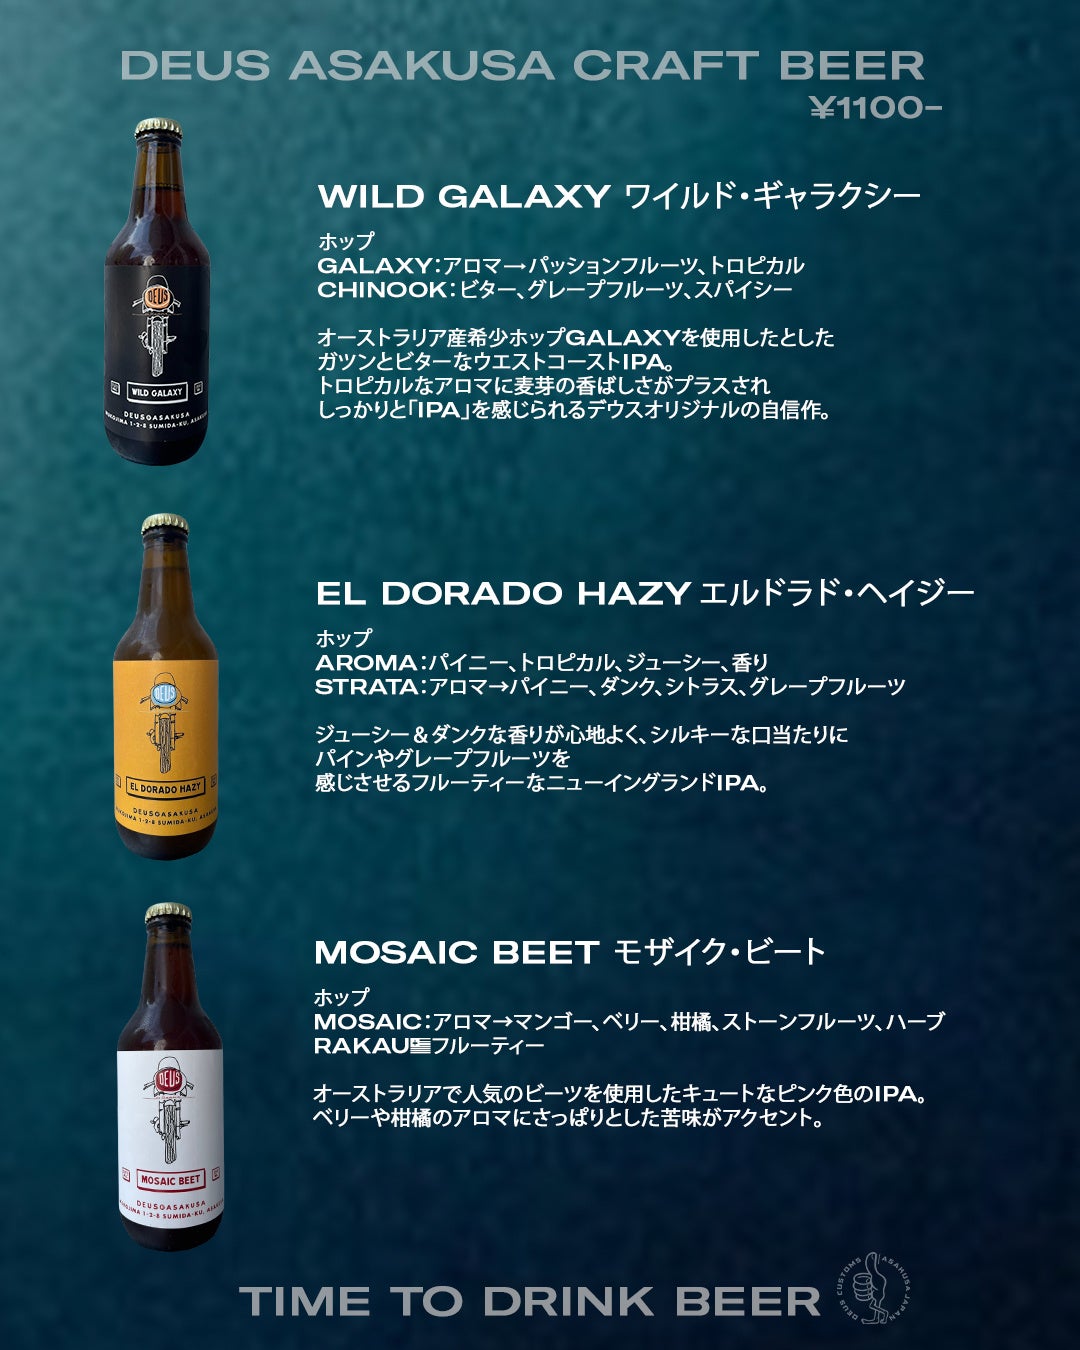 【店舗限定】デウス 浅草 クラフト ビールの誕生のサブ画像2_Deus Asakusa Craft Beer デウス浅草クラフトビール